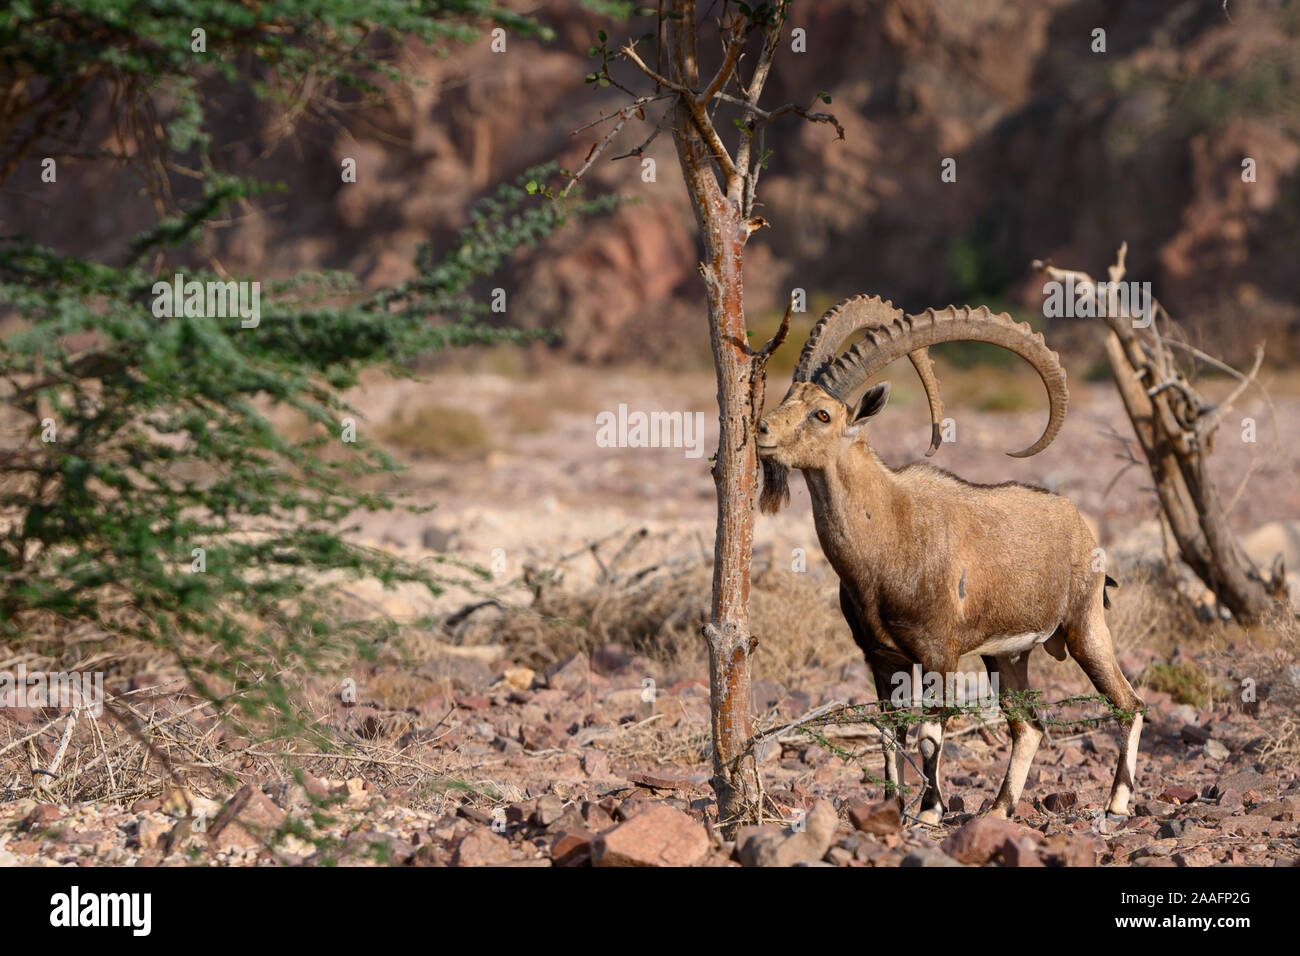 Le bouquetin de Nubie chèvre dans l'habitat naturel du parc Timna repéré en tout en mangeant d'un arbre Banque D'Images